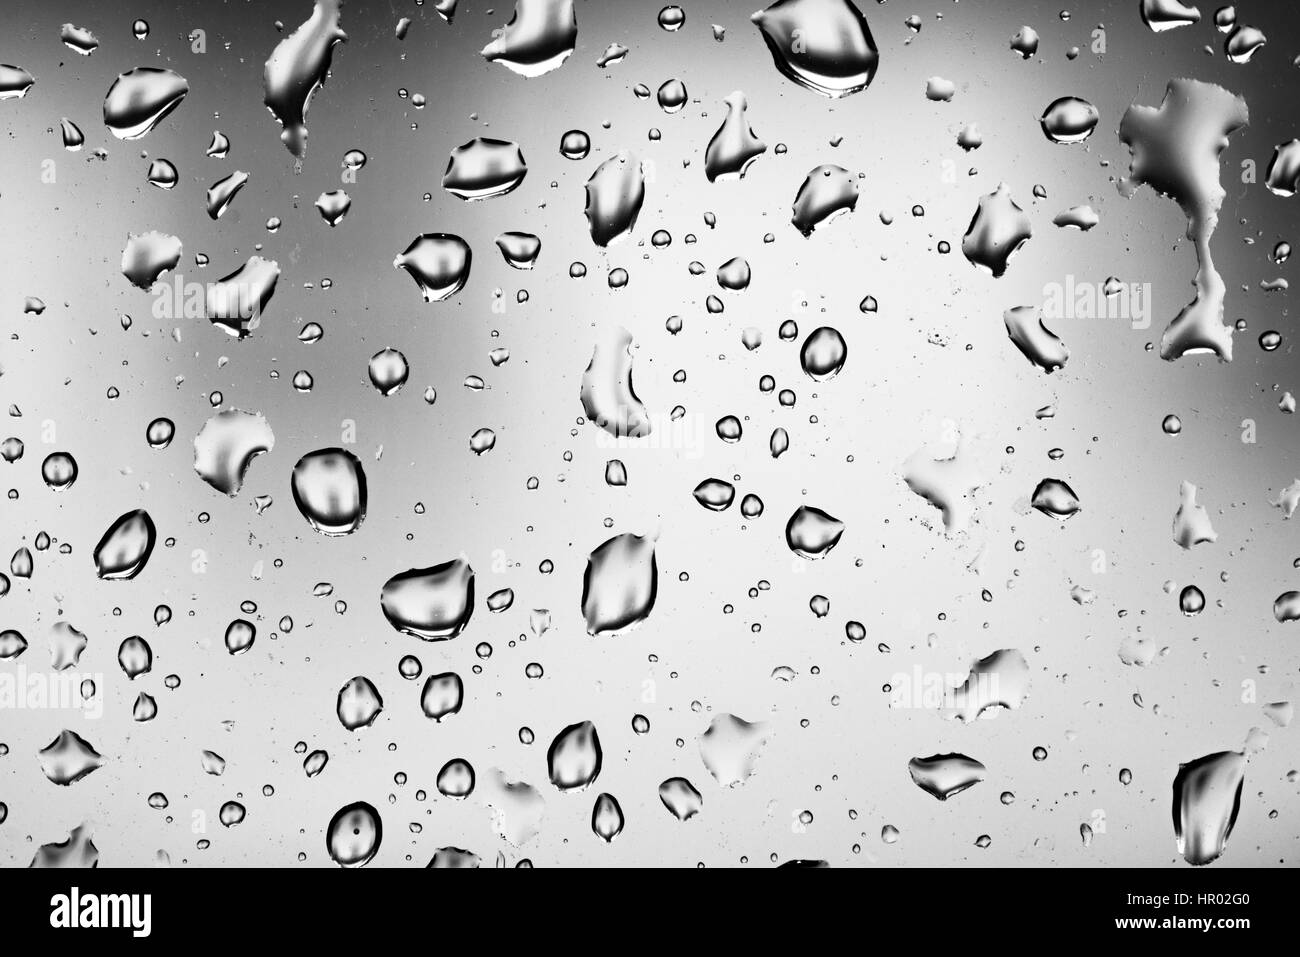 https://c8.alamy.com/compde/hr02g0/wassertropfen-auf-einer-fensterscheibe-glasscheibe-fenster-regen-schlechtes-wetter-vollformat-hintergrundbild-hr02g0.jpg